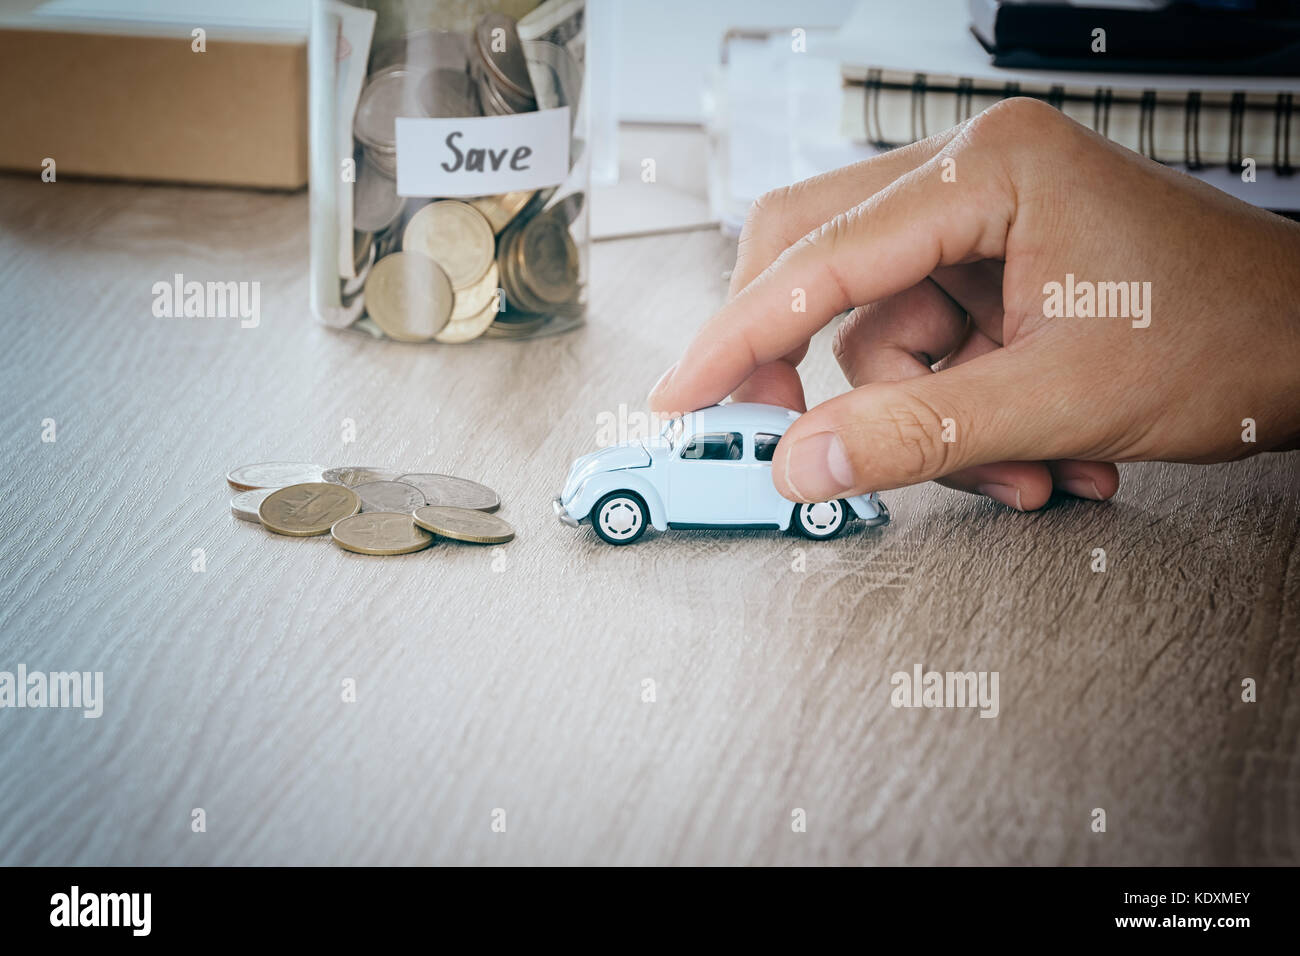 Auto in Männer Hand auf Schreibtisch mit blured Geld Münze in den jar-bank speichern Konzept für Wartung Kosten und Steuern Auto, warmen Ton Filter Stockfoto